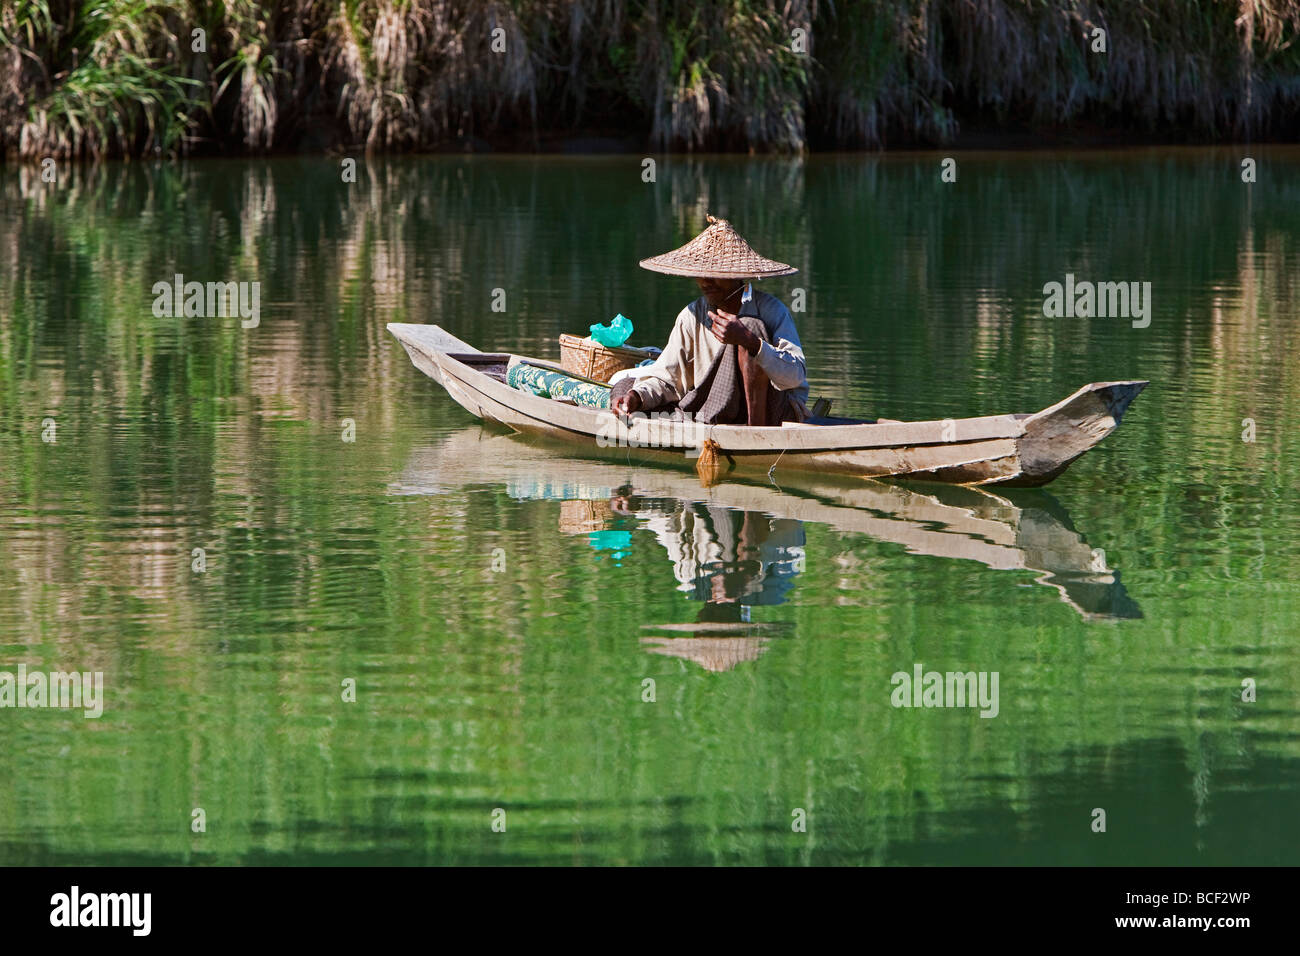 Myanmar Birmania, laici Mro fiume. Un uomo Rakhine pesci da una piccola barca di legno in acque tranquille del lay Myo fiume. Foto Stock